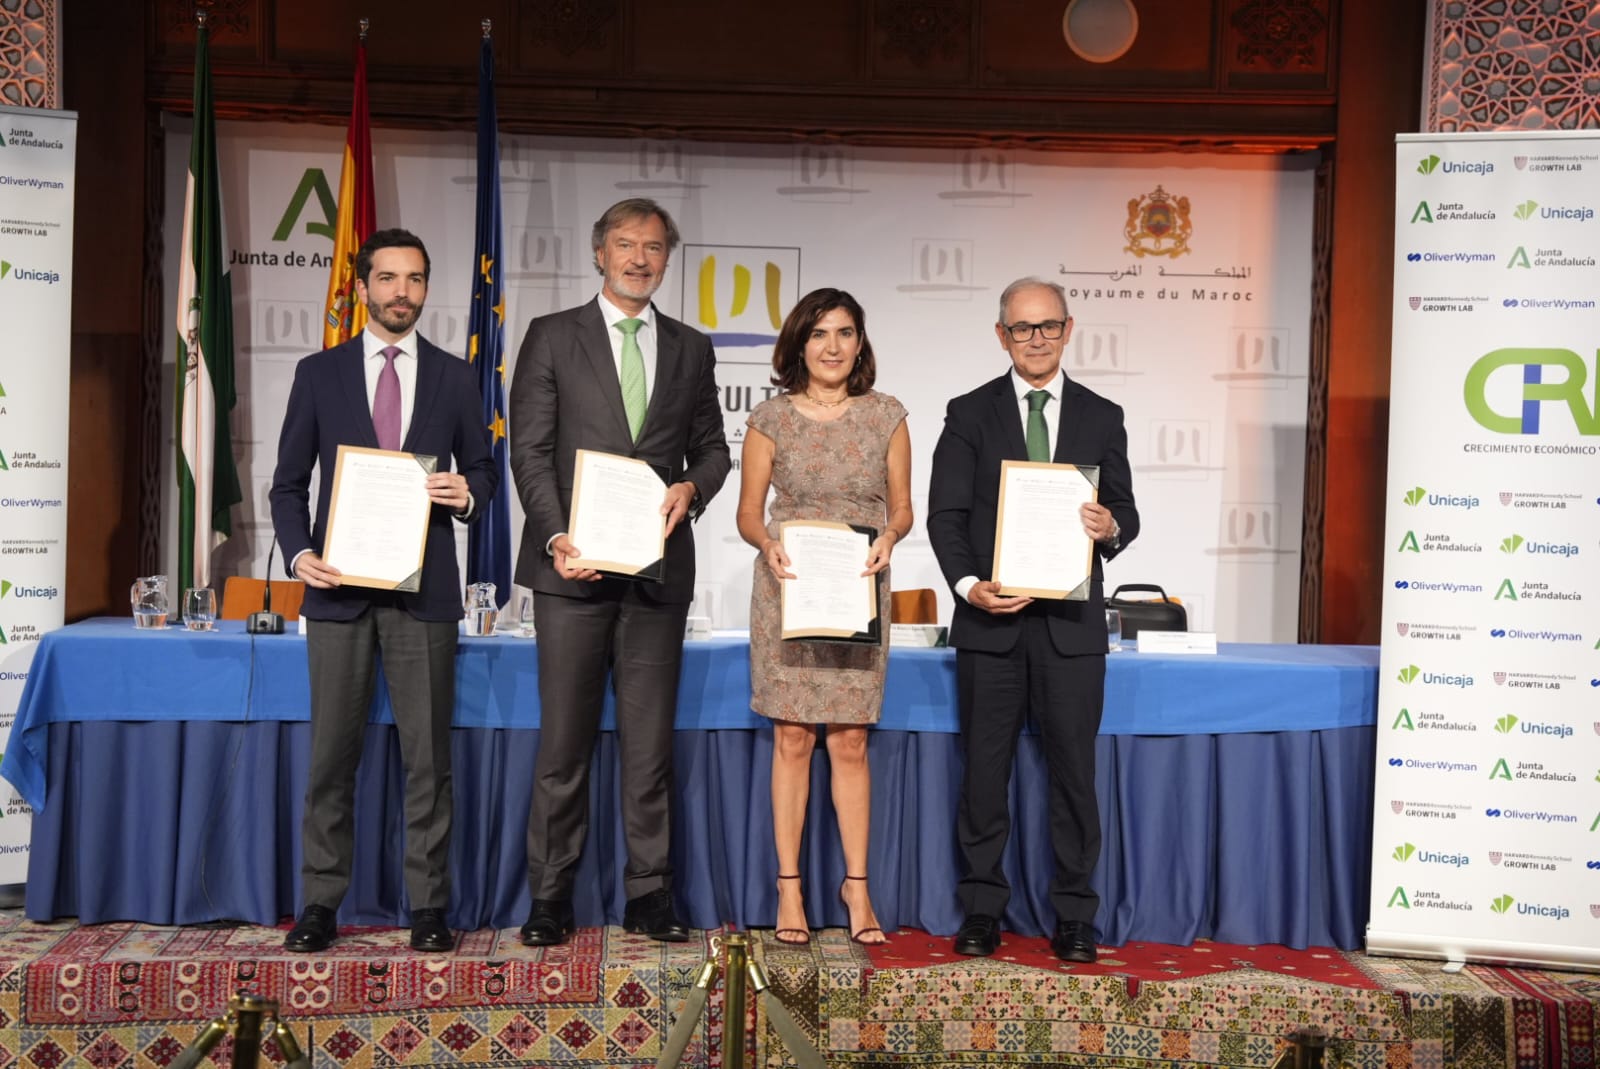 Junta de Andalucía, Unicaja, Harvard y Oliver Wyman sellan una colaboración pionera en Europa para impulsar el crecimiento económico y la creación de empleo